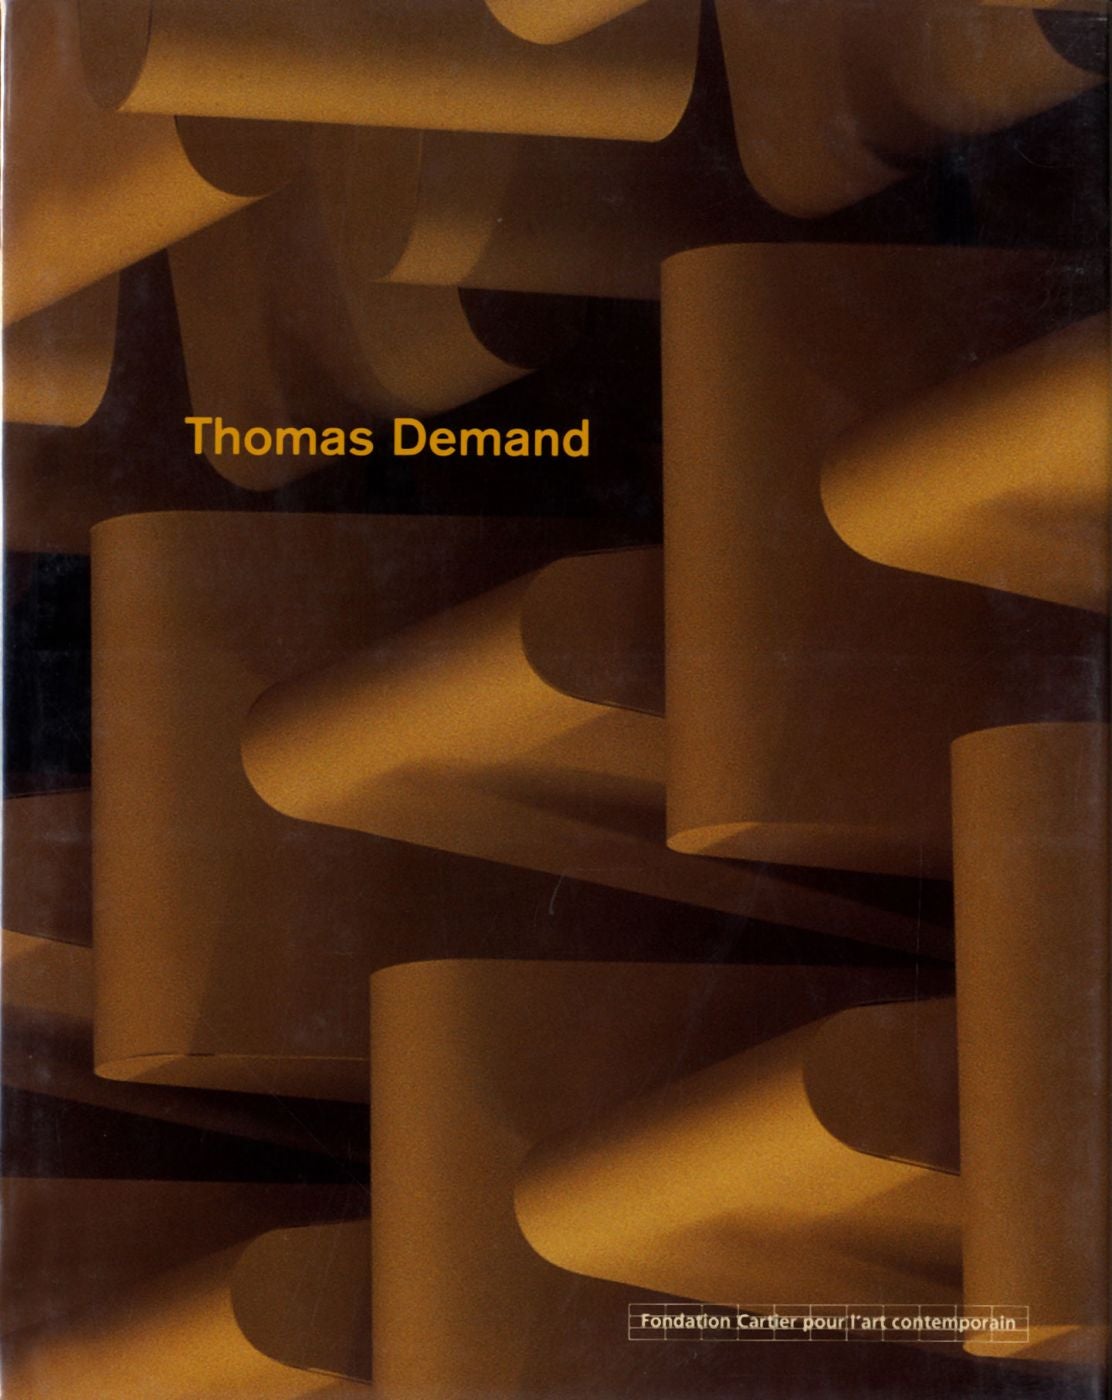 Thomas Demand (Actes Sud and Fondation Cartier pour l'art contemporain, French Edition)